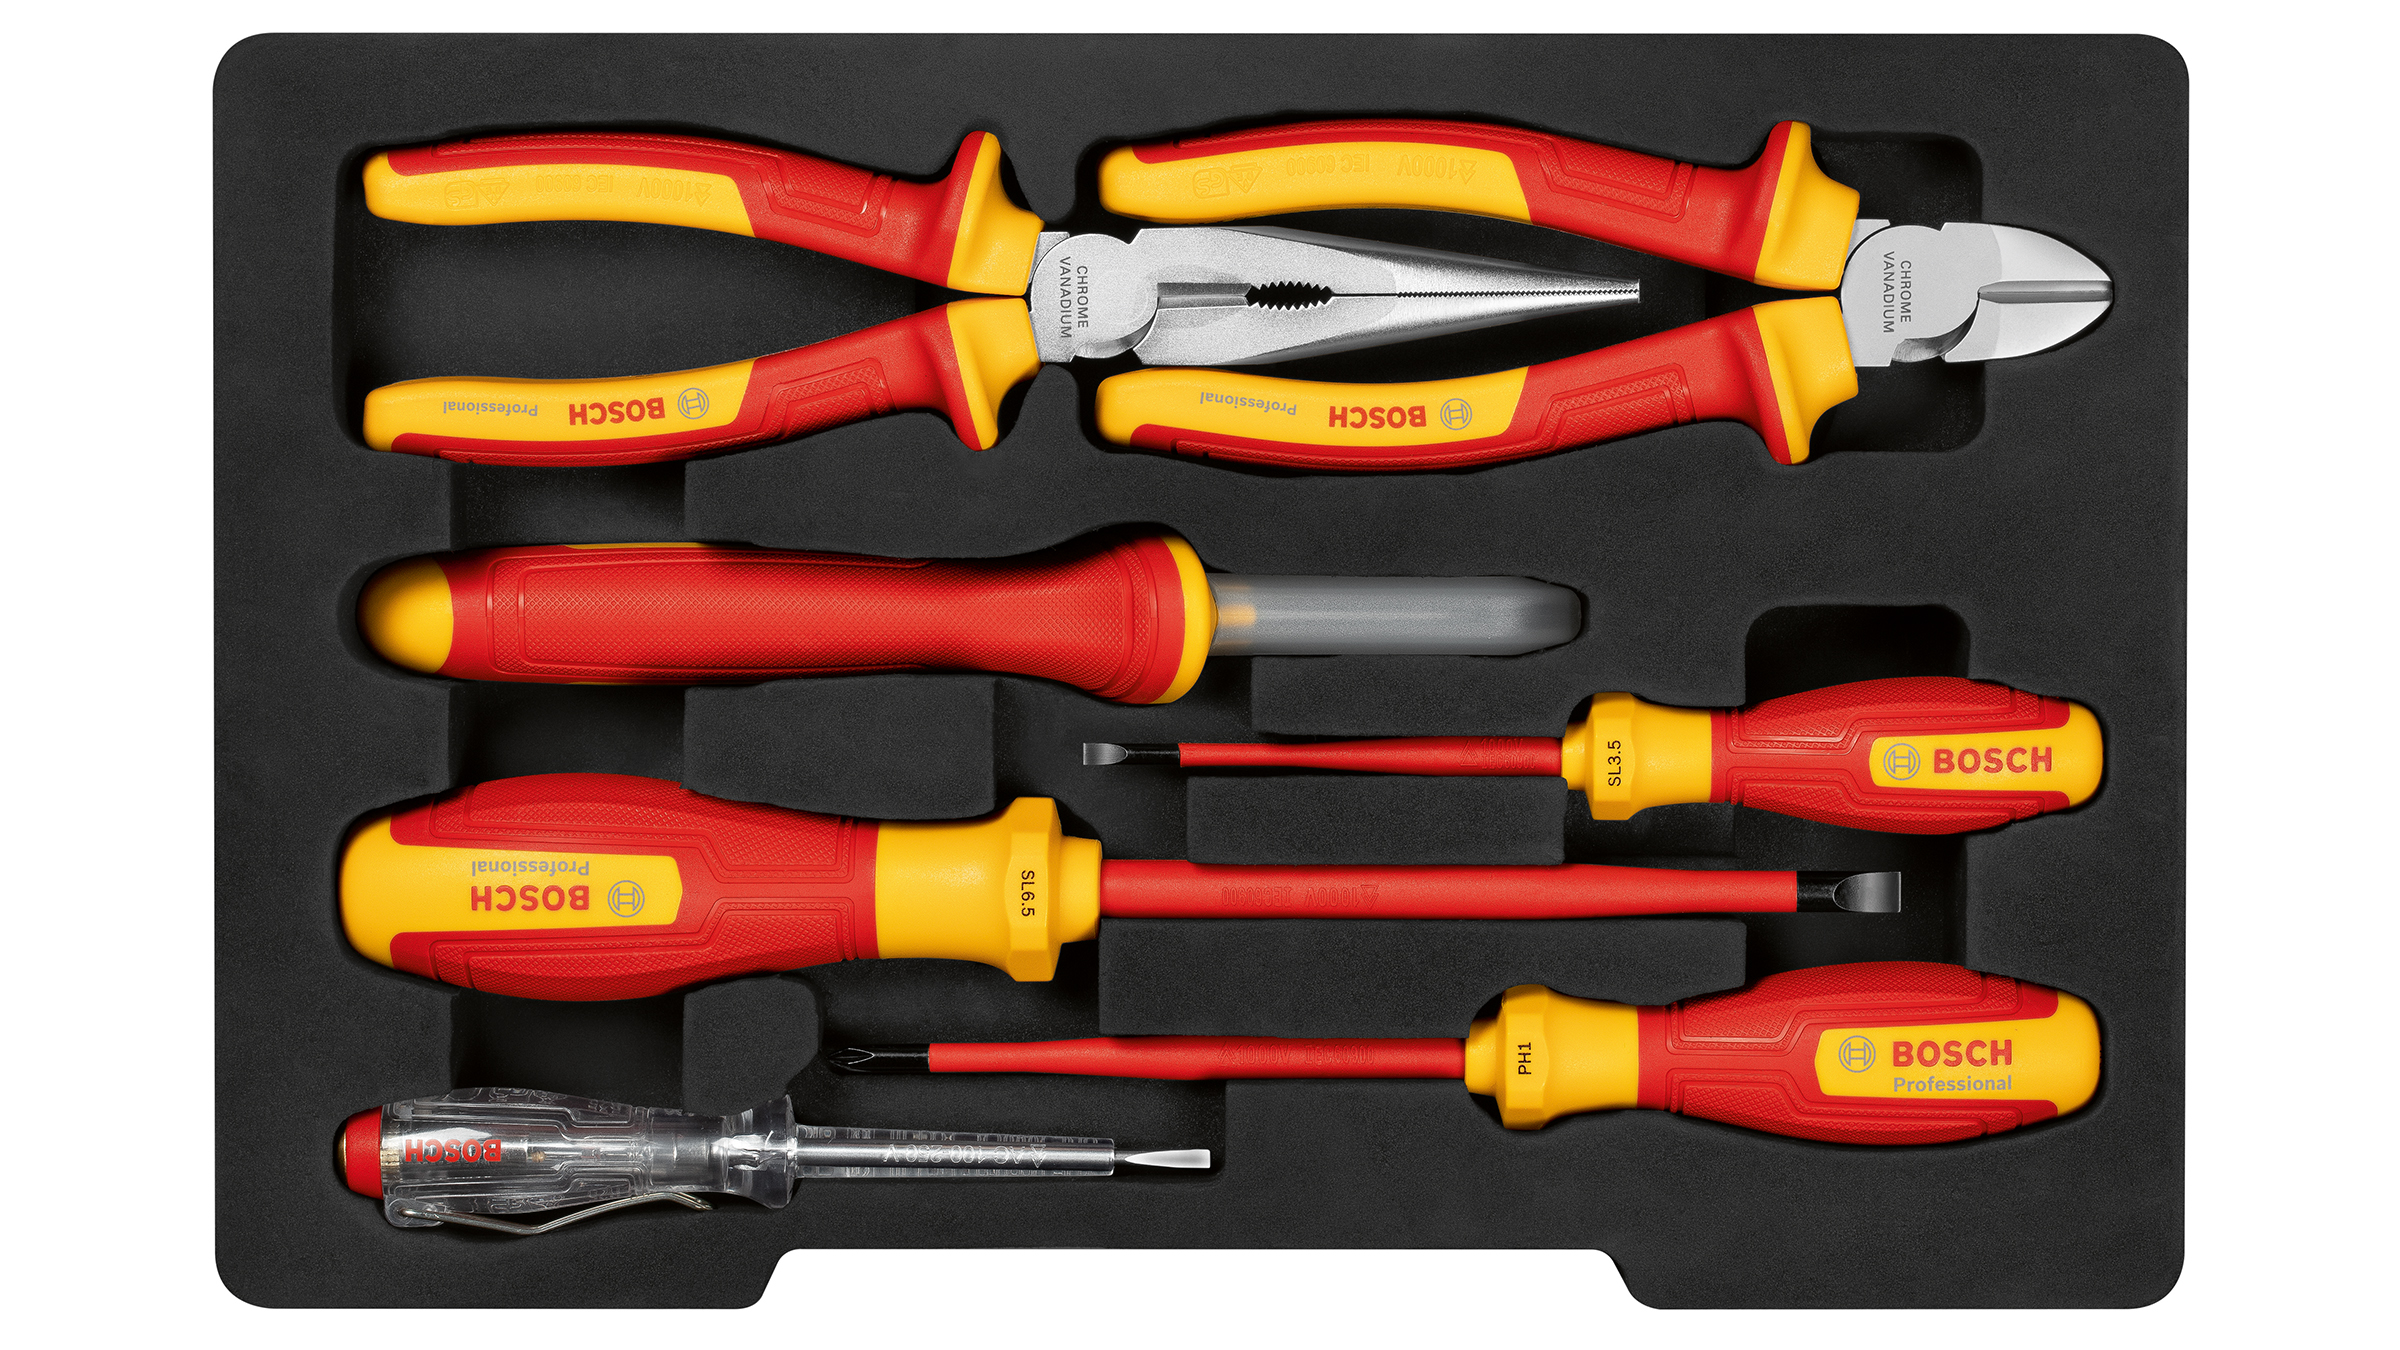 Schraubendreher, Zangen, Messer und mehr: VDE-Handwerkzeuge von Bosch für Profis